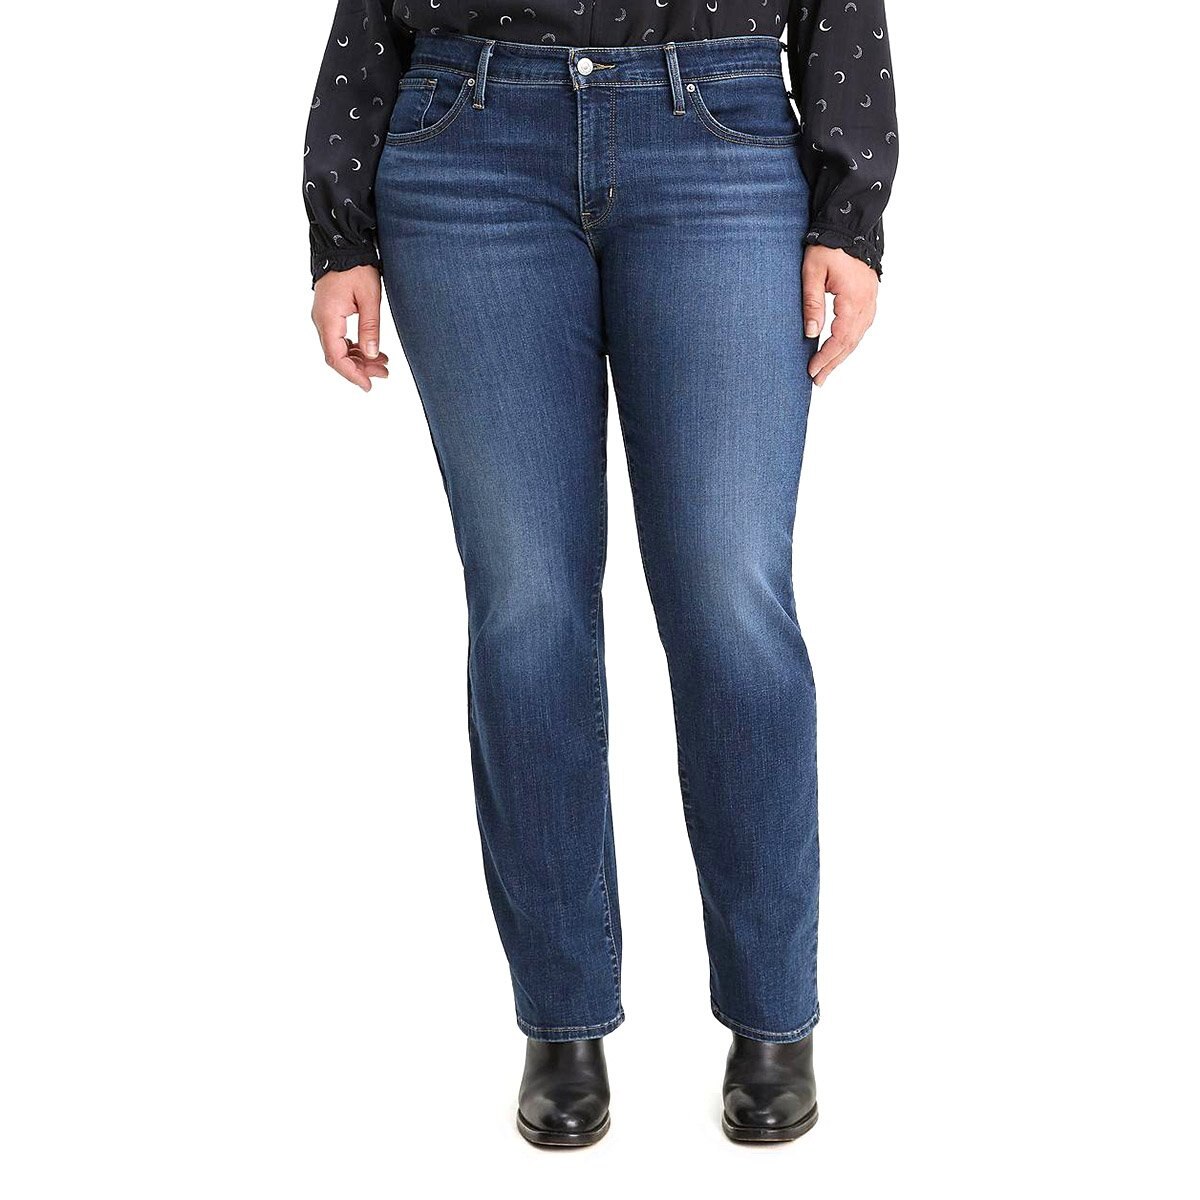 Jeans Recto Cintura Media Levis Para Dama Sears